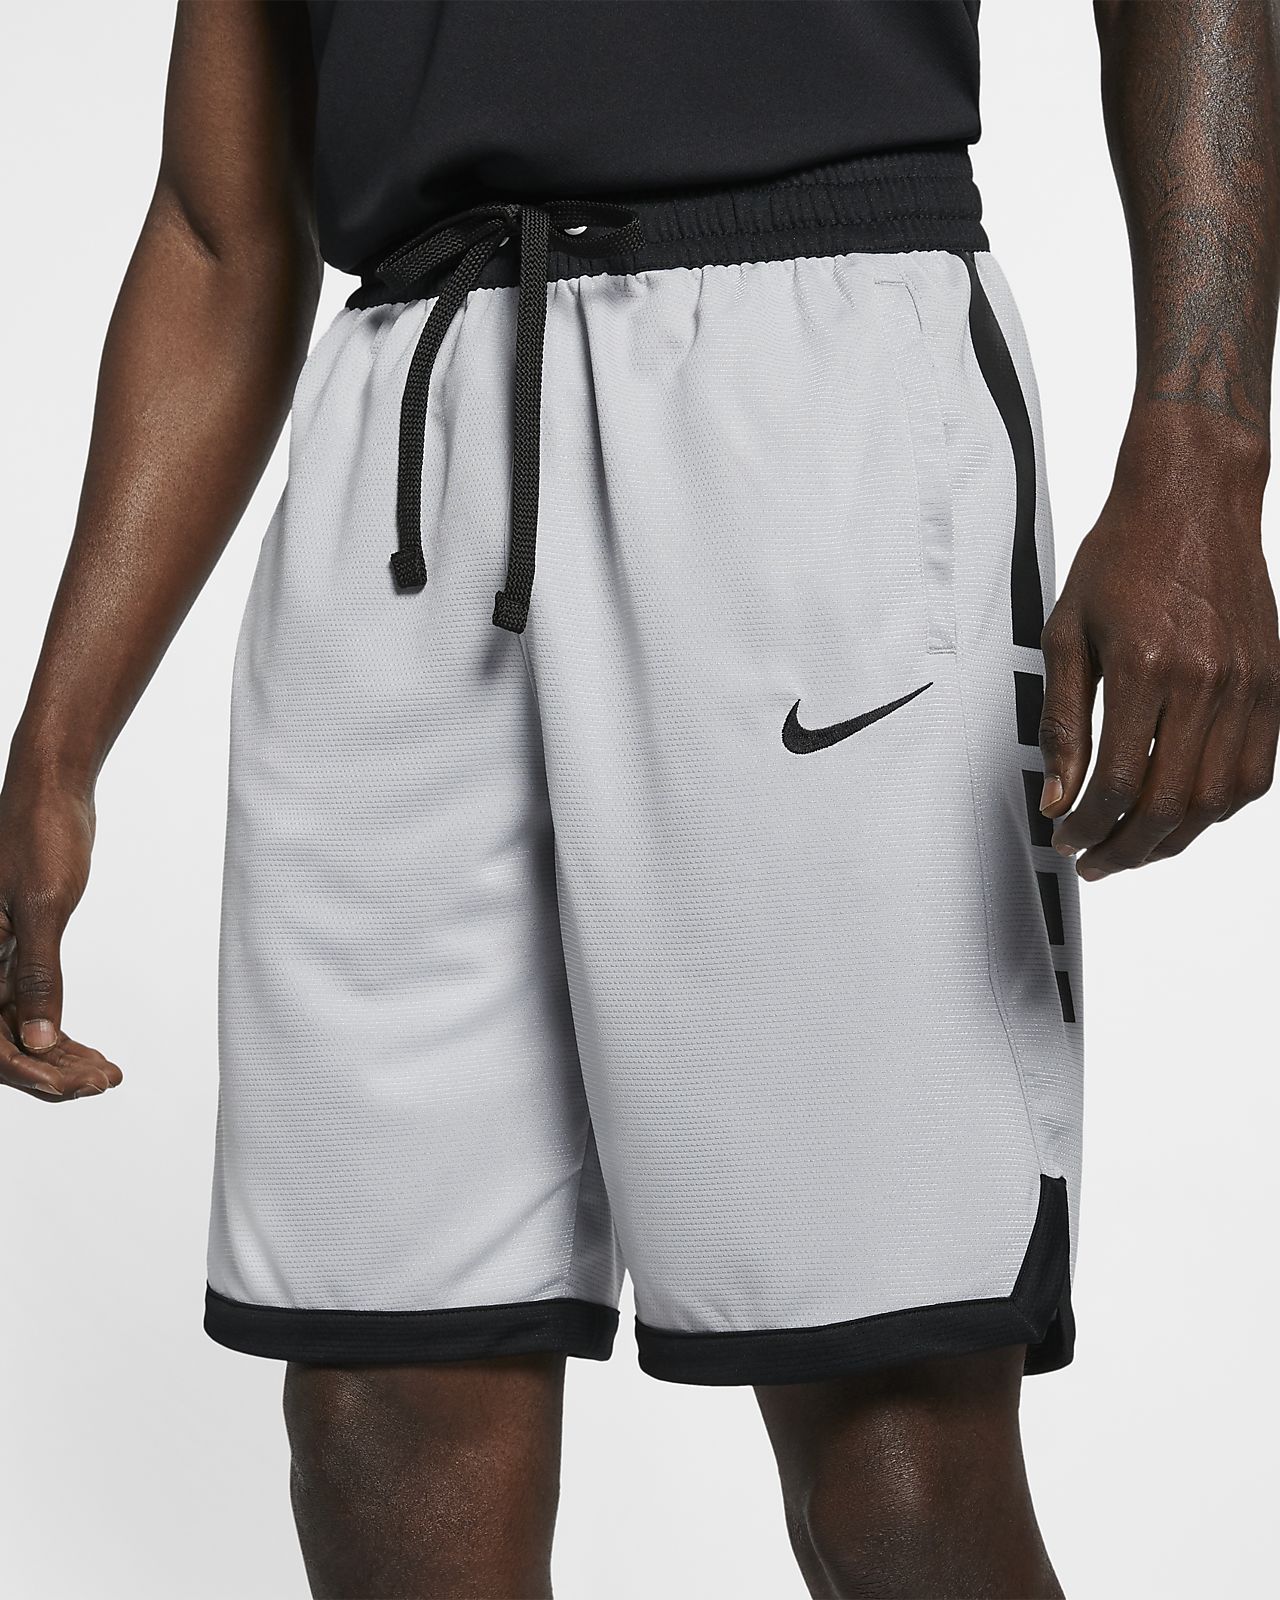 Шорты nike dri fit. Шорты Nike Dri Fit Basketball. Nike ACG Dri-Fit шорты. Шорты Nike Dri-Fit Basketball 3.0.